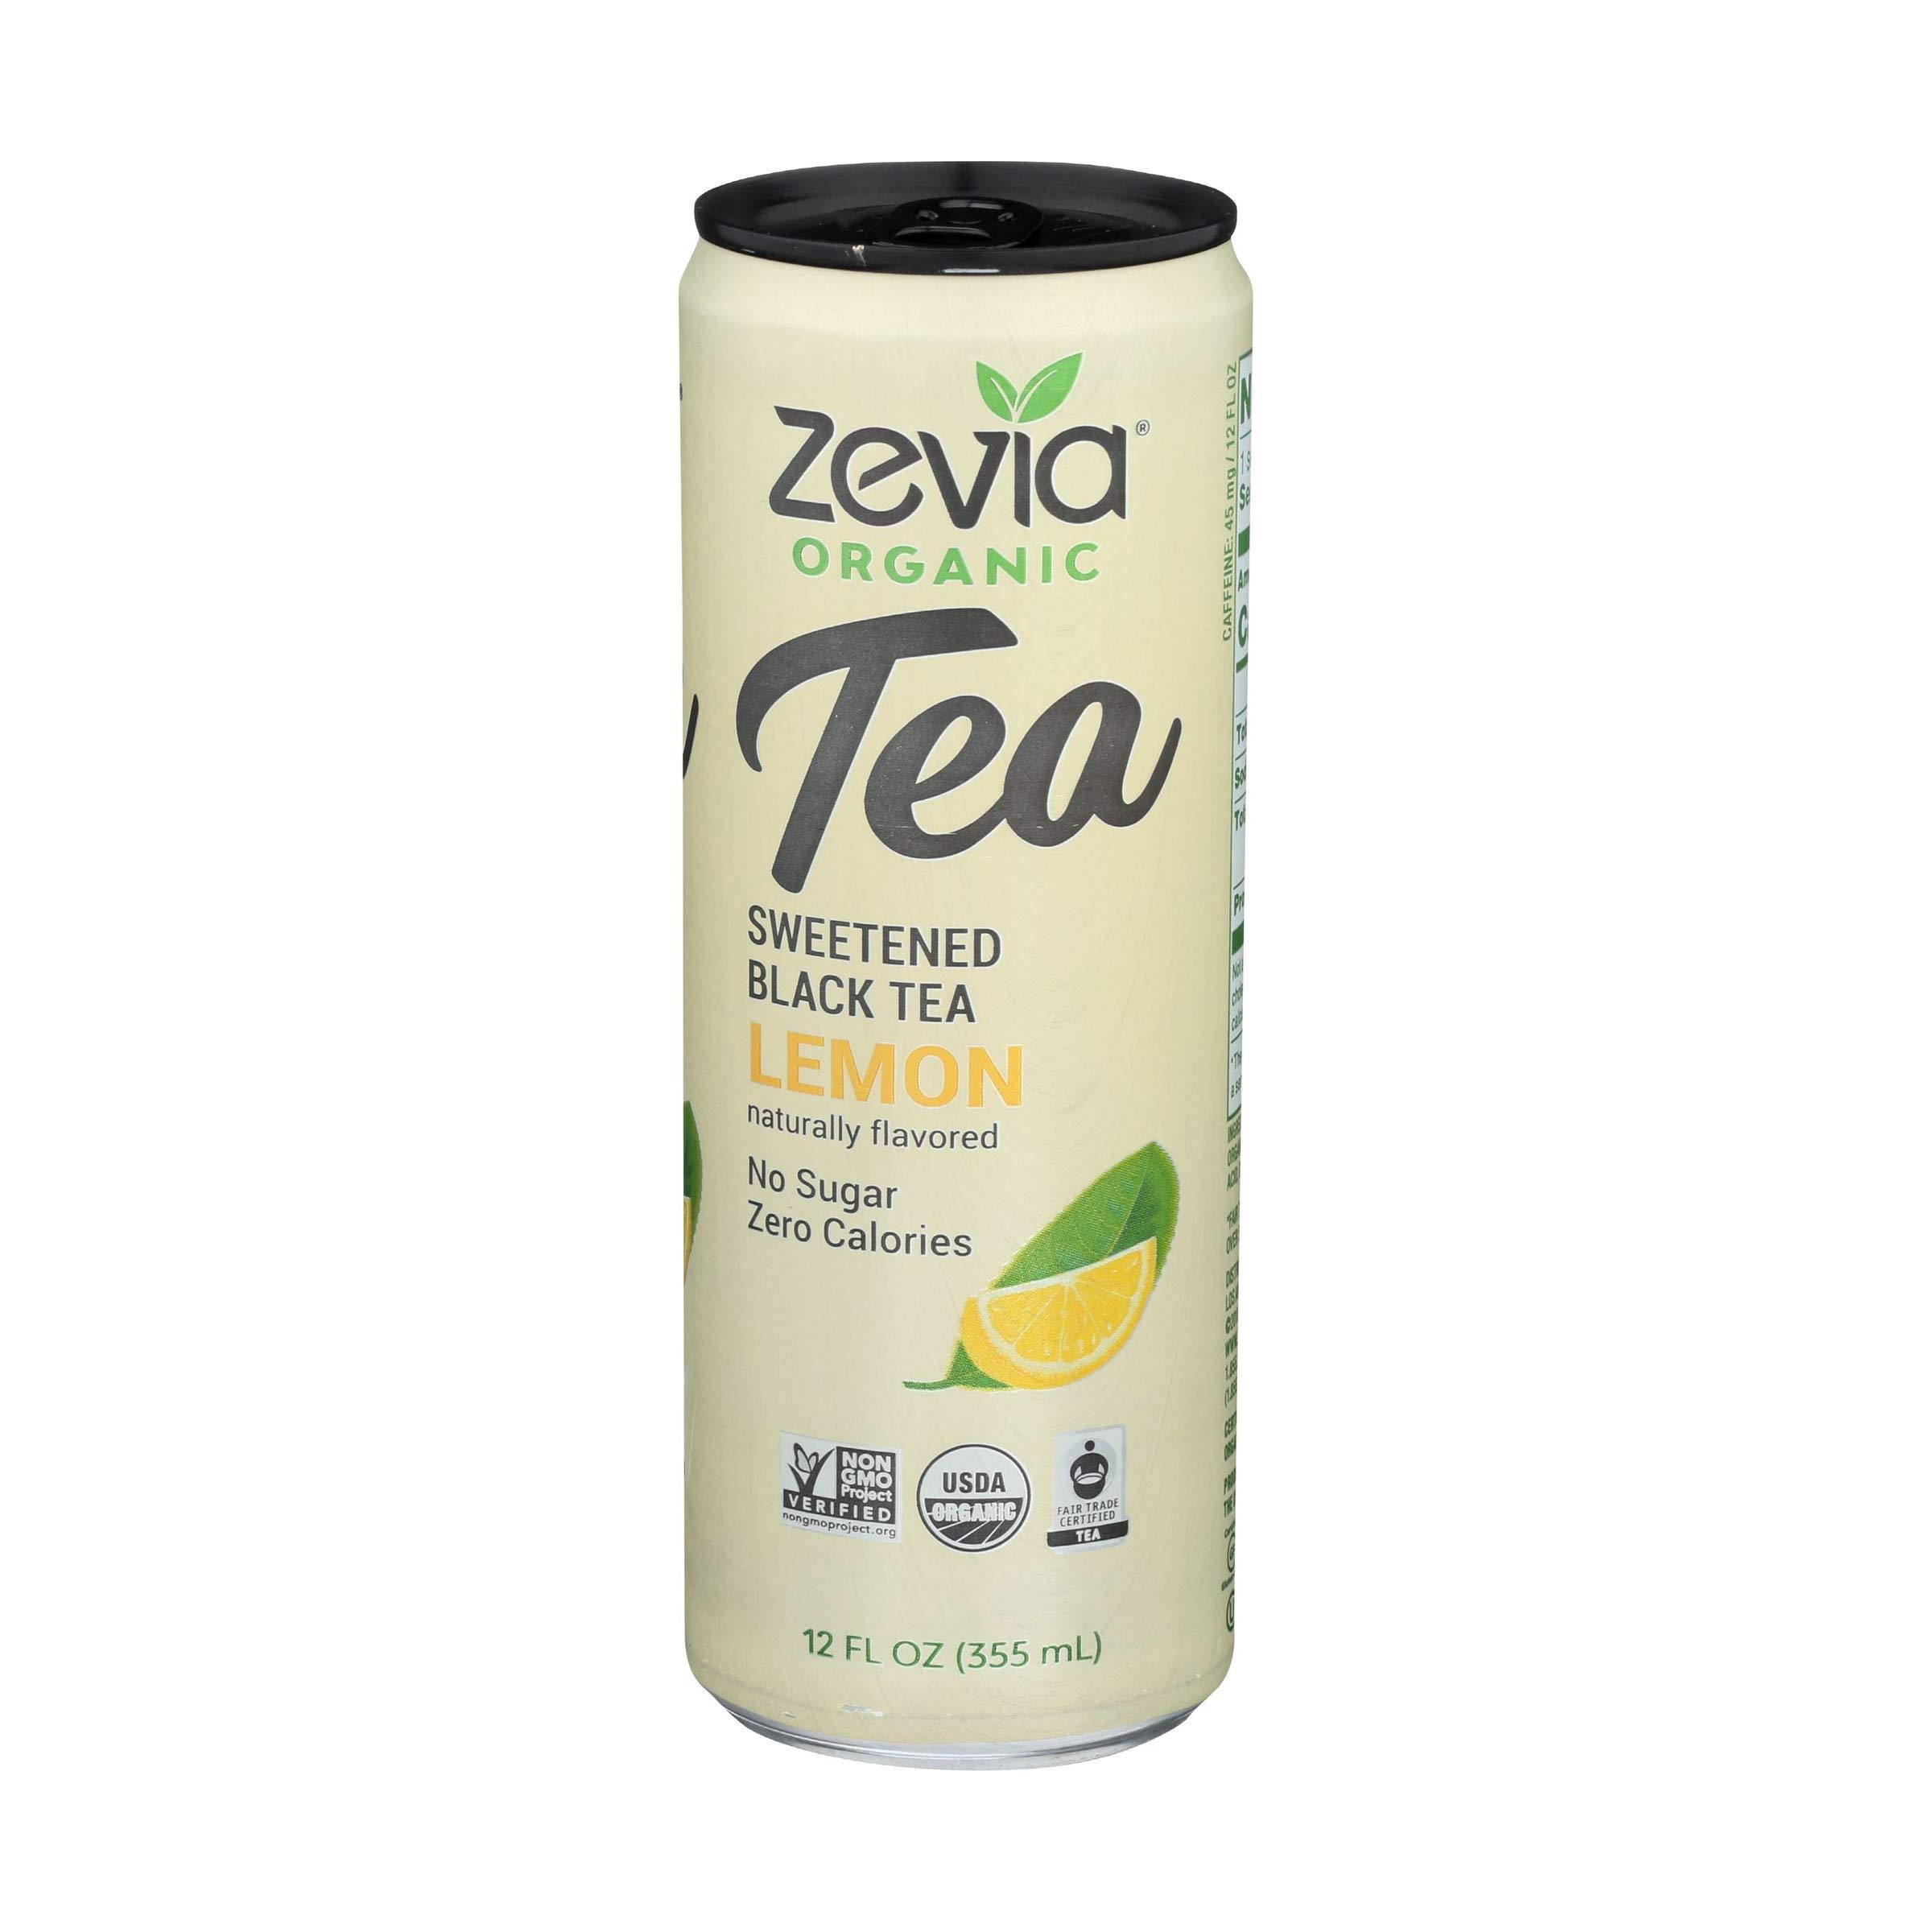 Zevia - Tea Black Lemon - Case of 12 - 12 FZ